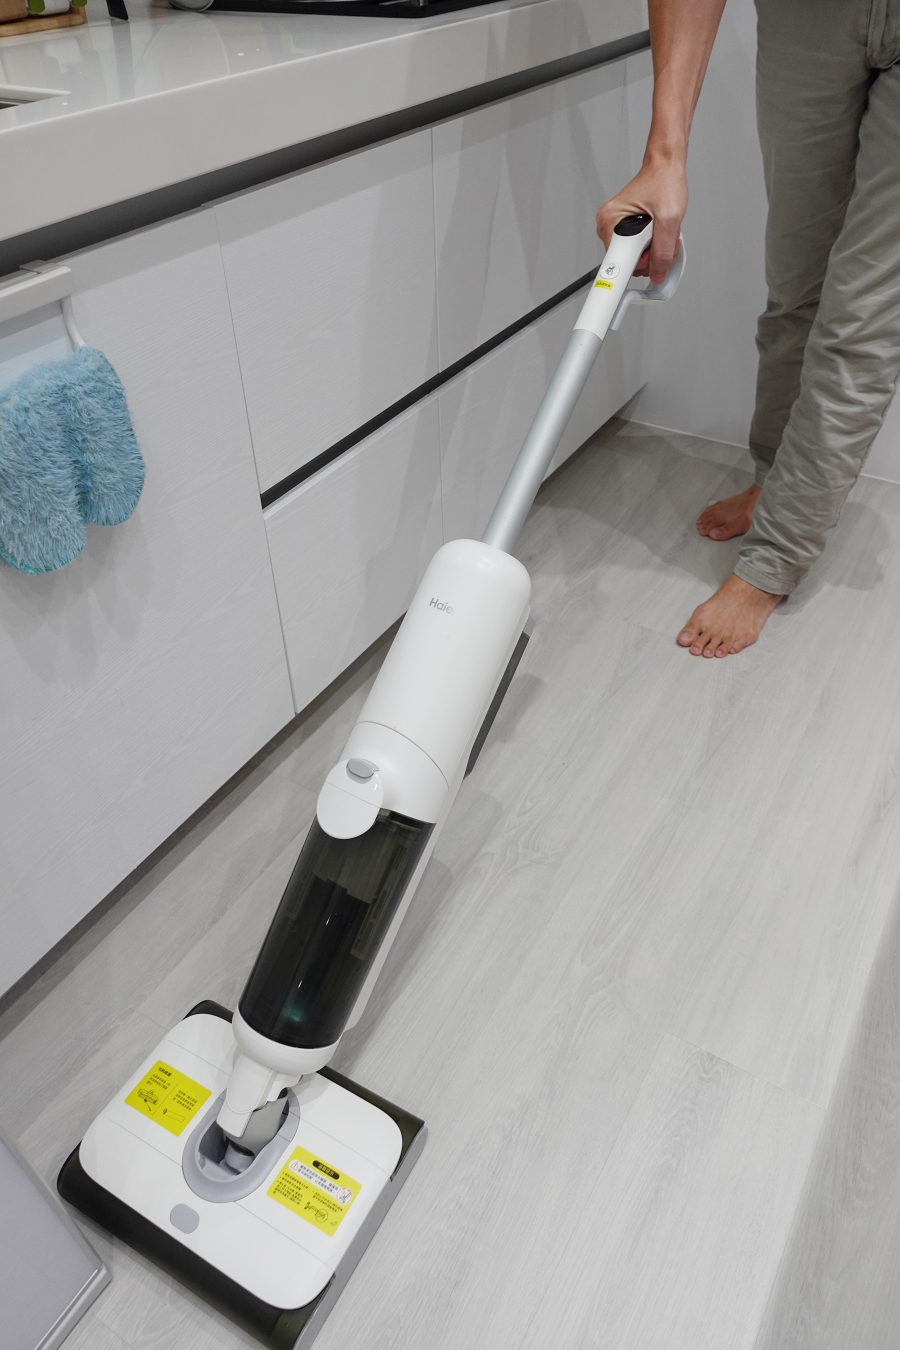 Haier海爾雙動力智慧洗地機X9有除菌模式能自製除菌水，像是廚房這種比較容易有油污的地方，用除菌模式就能快速把地板拖乾淨